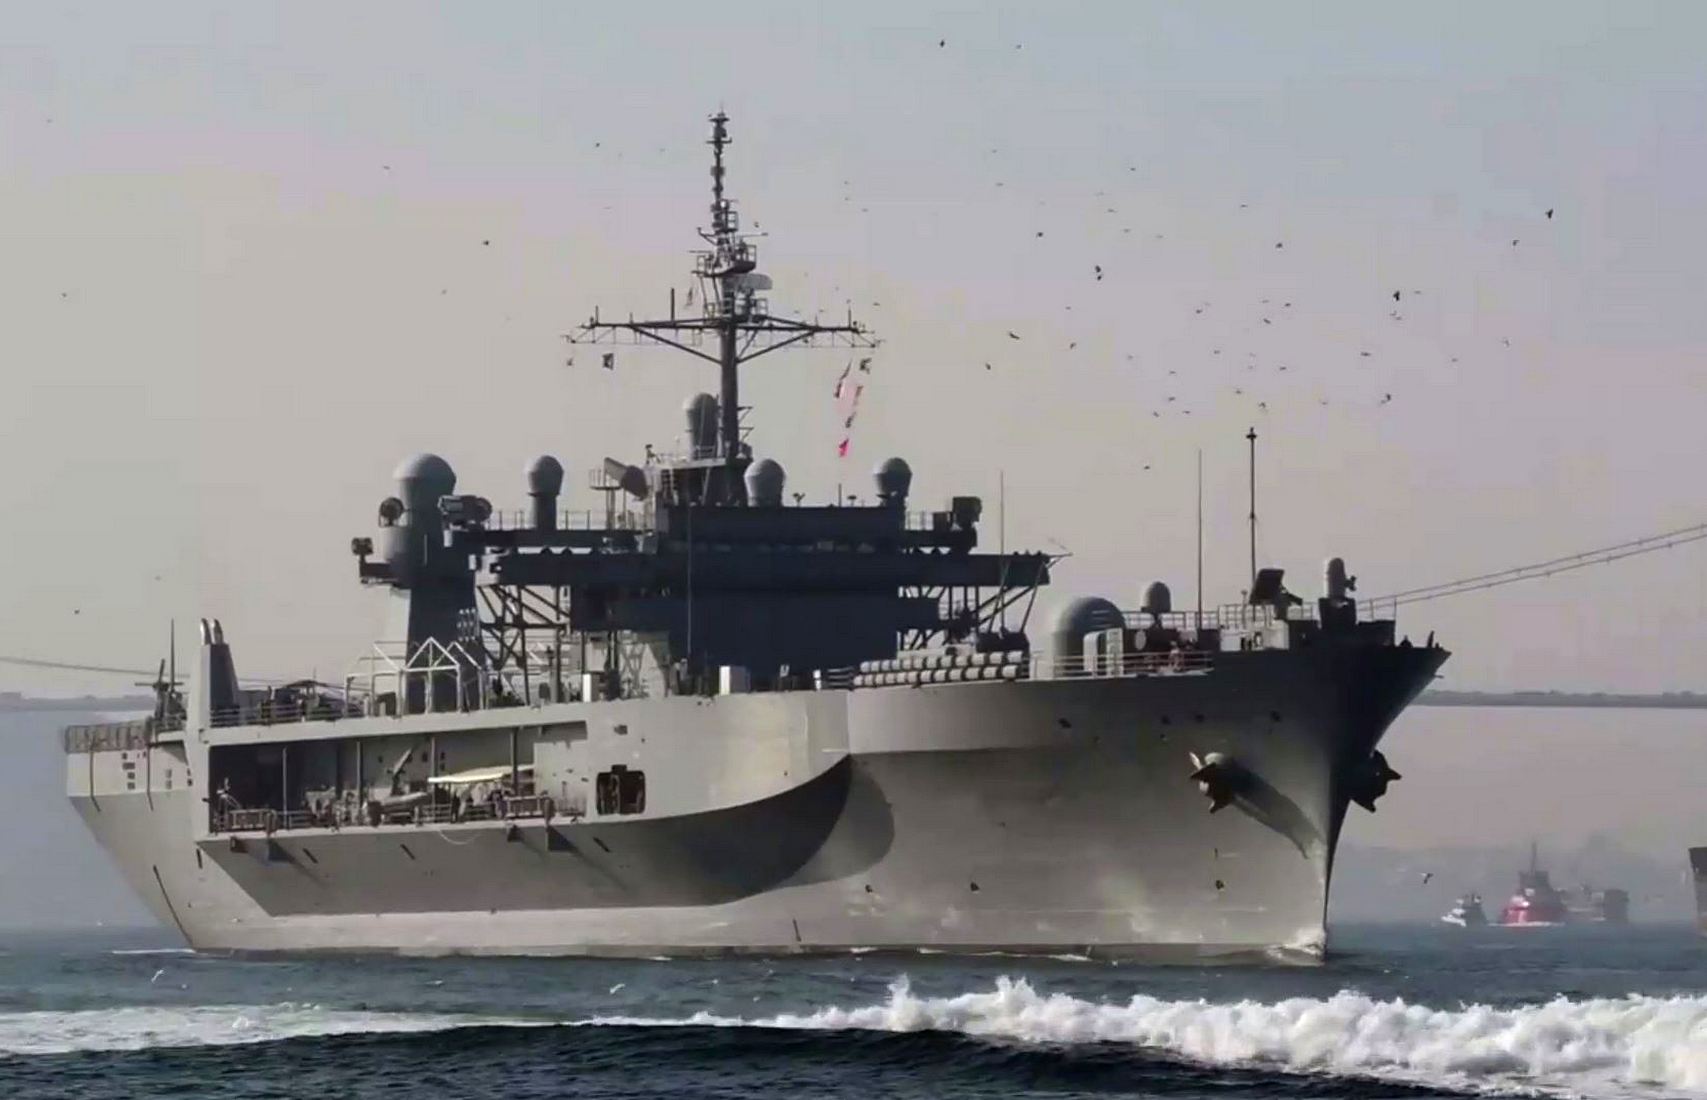 Появилось видео с флагманом LCC 20 Шестого флота США, входящим в Чёрное море